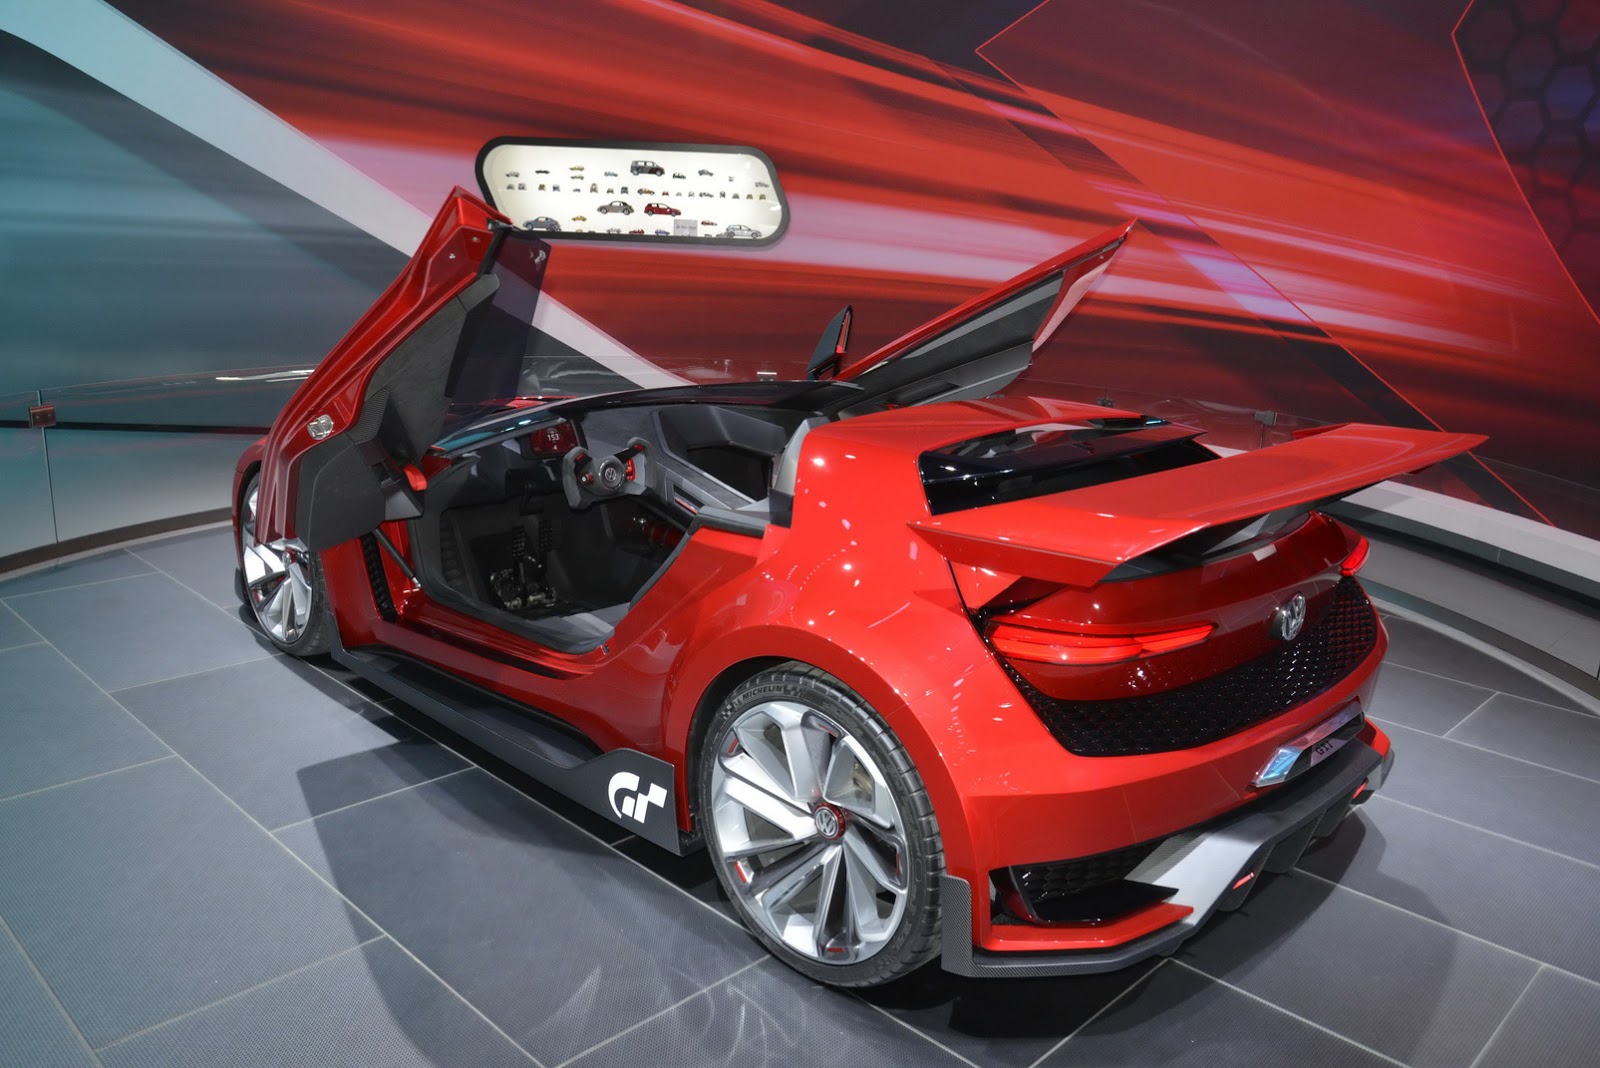 Volkswagen GTI Roadster Backgrounds on Wallpapers Vista